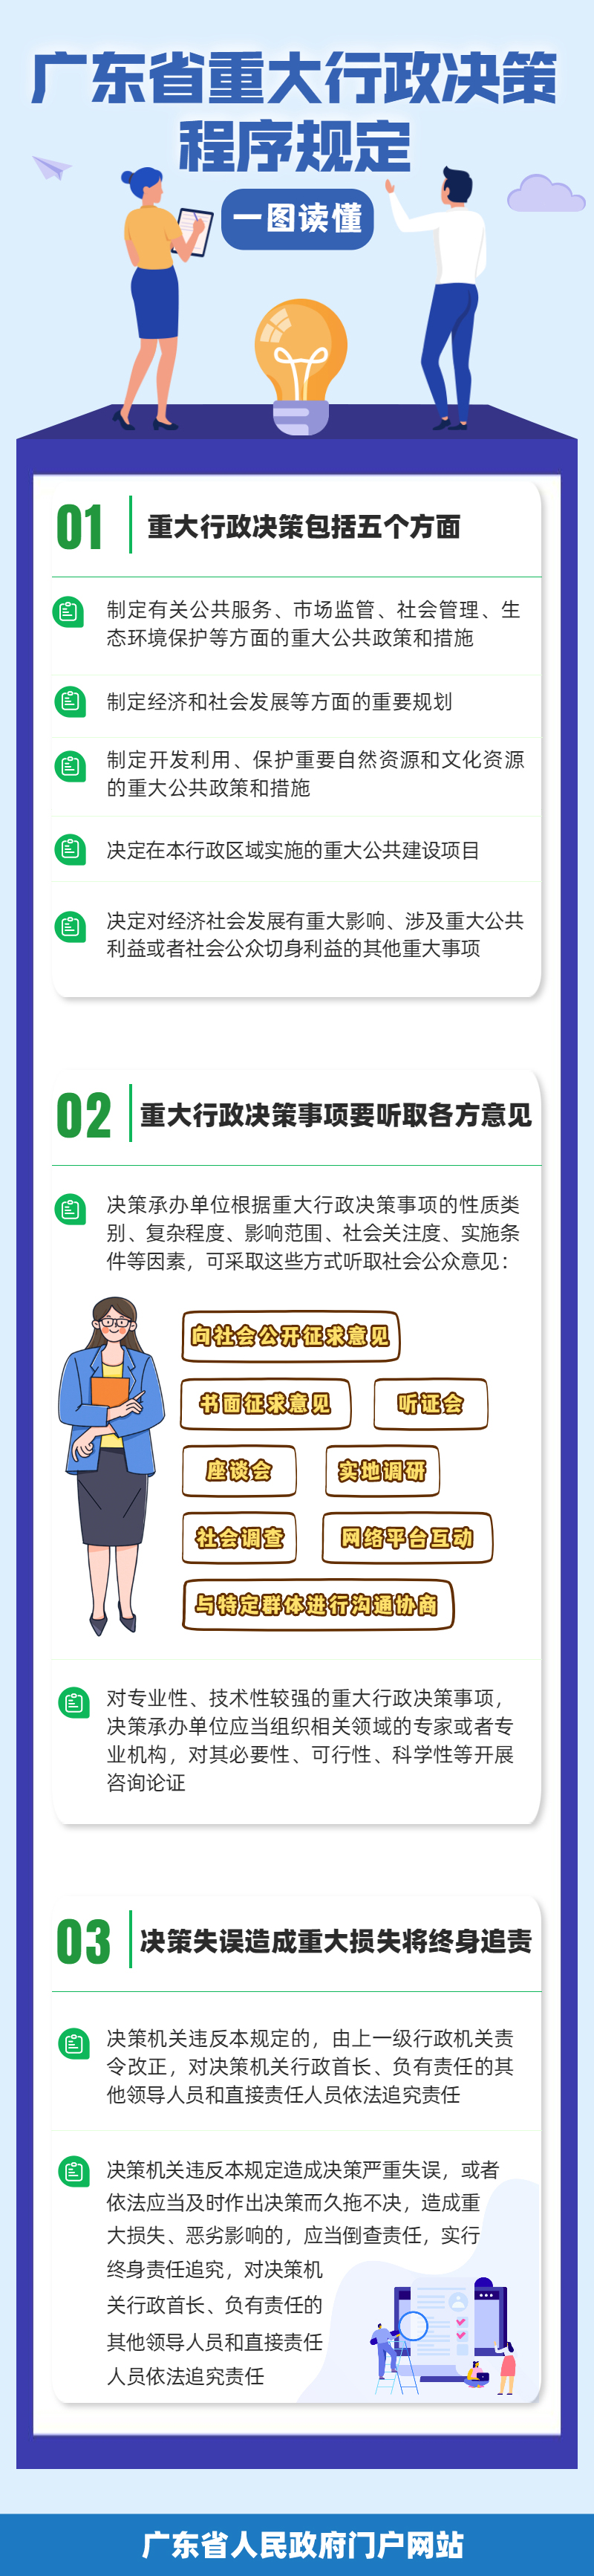 【图解】一图读懂广东省重大行政决策程序规定.png